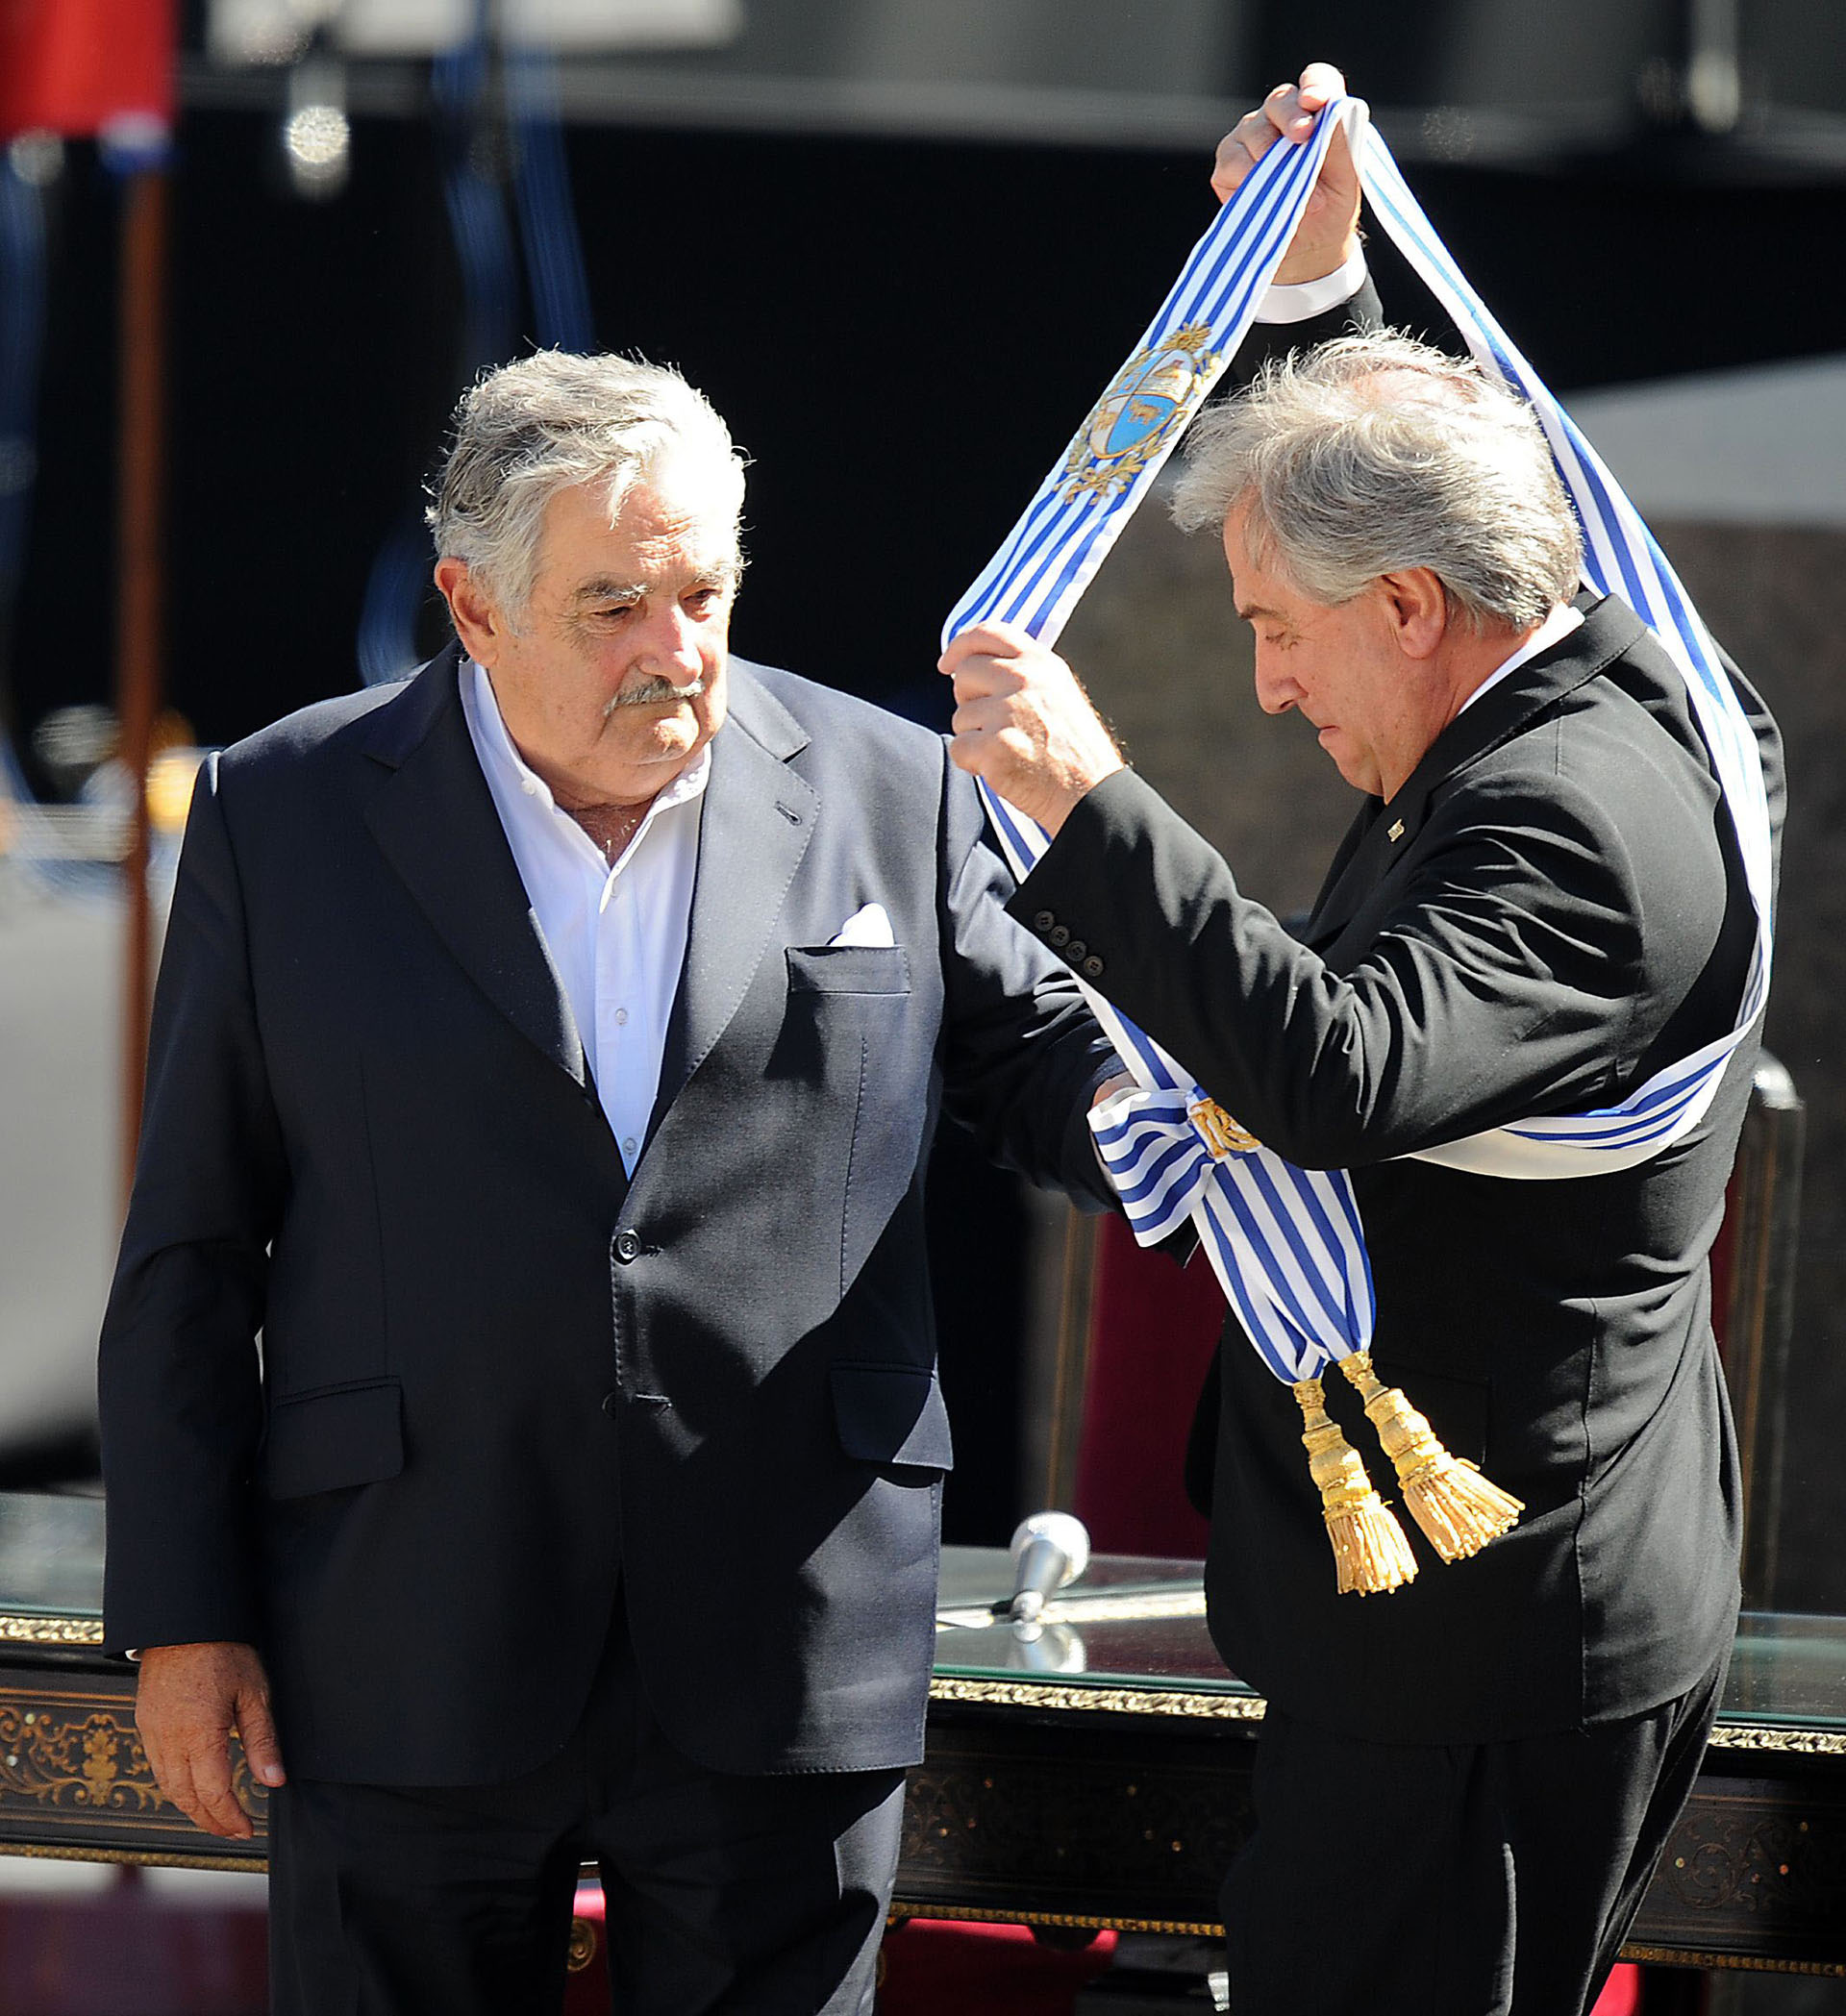 En marzo de 2010, traspasó al poder a su compañero de partido José "Pepe" Mujica